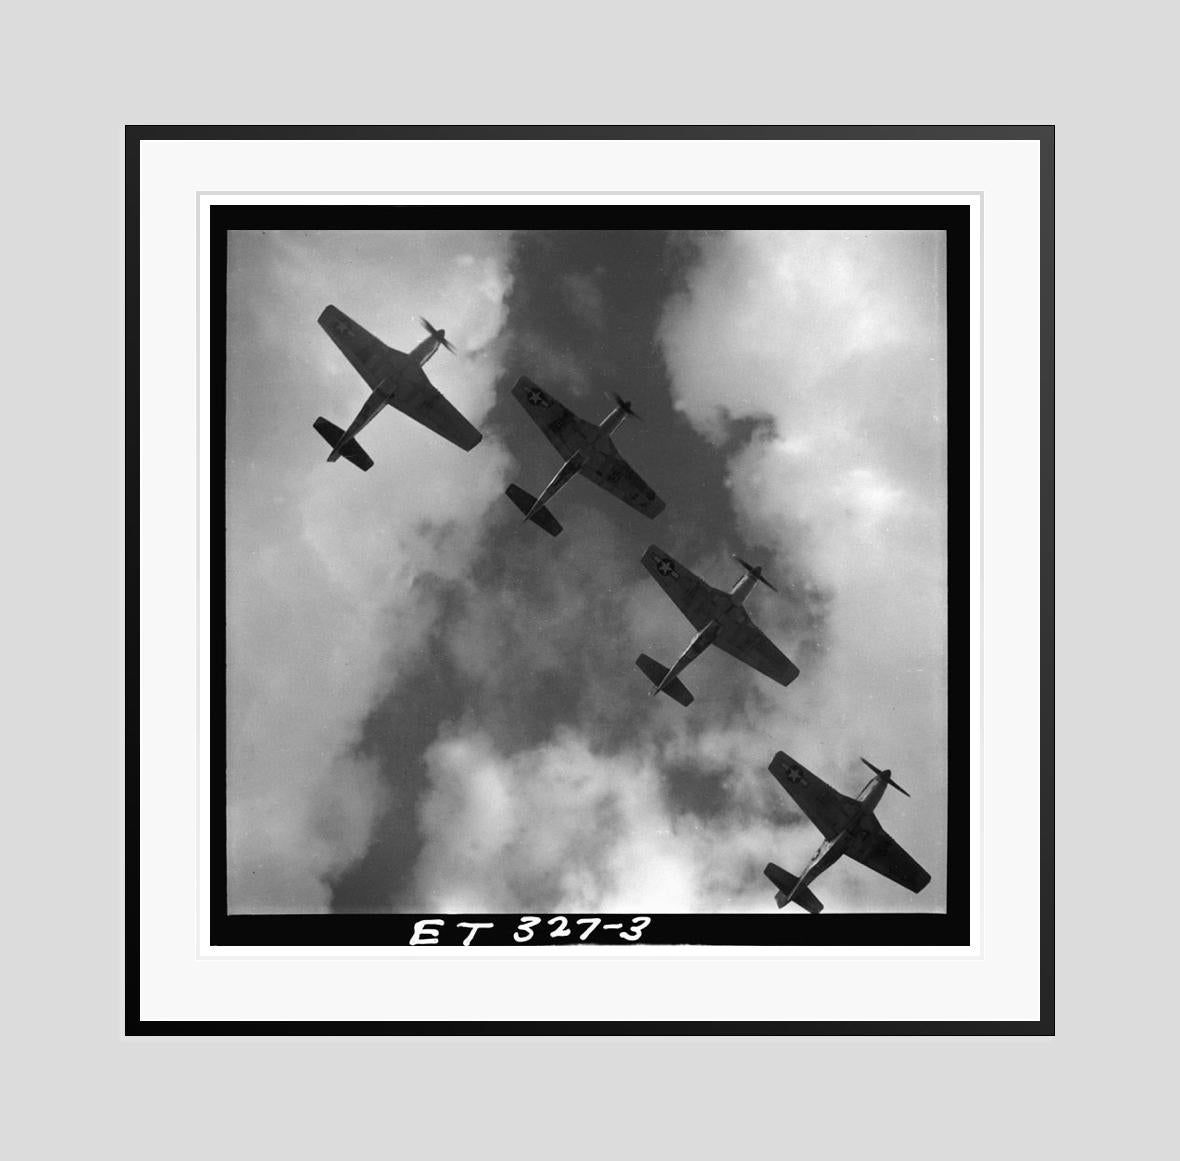 Mustangs im Flug 

1945 

Vier P-51 Mustangs fliegen in Formation, Ramitelli, Italien 1945

von Toni Frissell

30 x 30